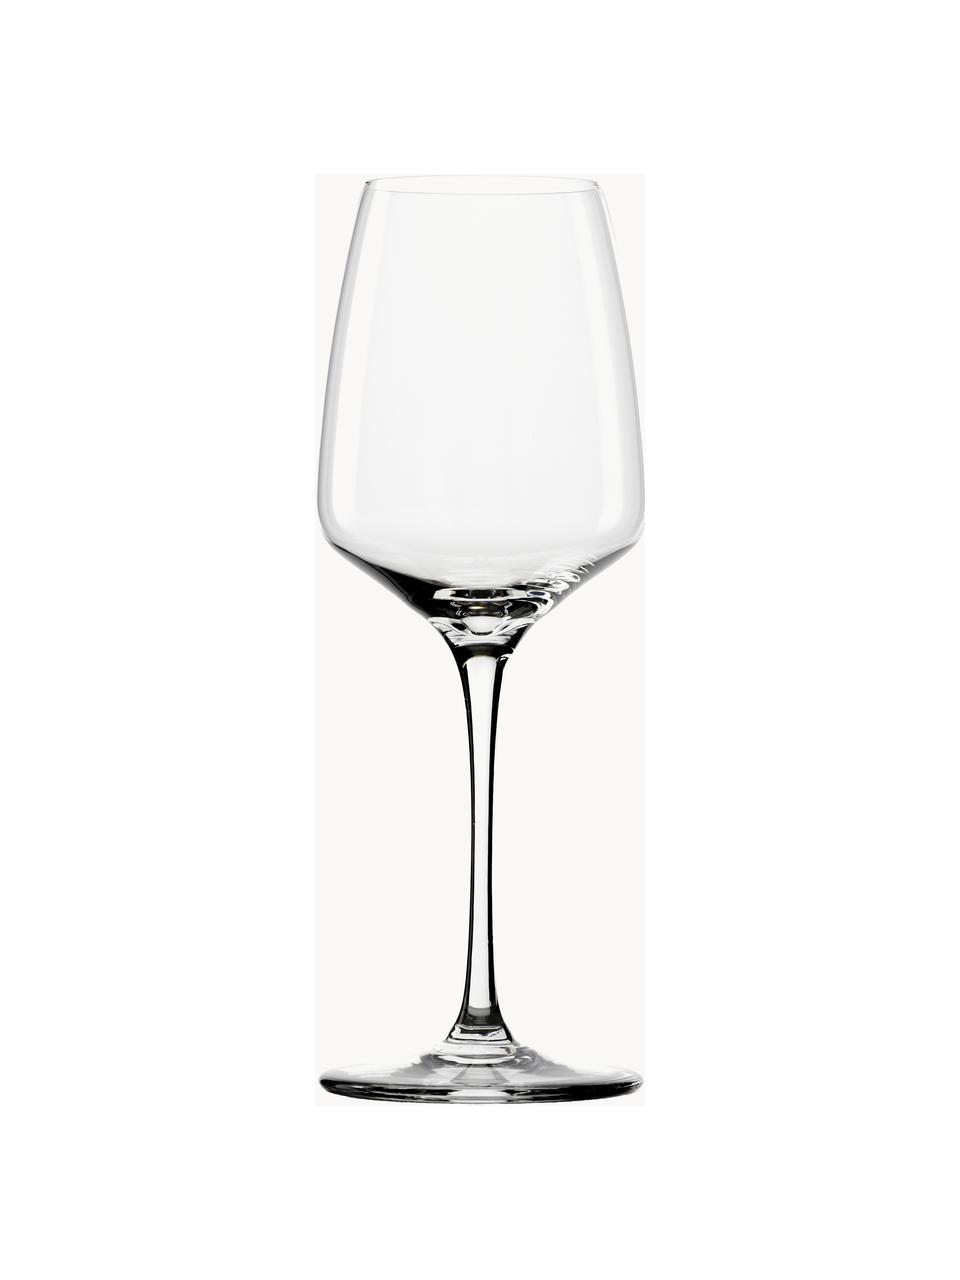 Krištáľové poháre na biele víno Experience, 6 ks, Krištáľové sklo

Vneste lesk krištáľového skla na váš jedálenský stôl! Sklo je výnimočne priehľadné a ťažké, čo znamená, že pôsobí hodnotne a zároveň dobre vyzerá. Navyše jemné tvary robia z každého kusu špeciálny kúsok, ktorý je praktický aj krásny., Priehľadná, Ø 8 x V 21 cm, 350 ml